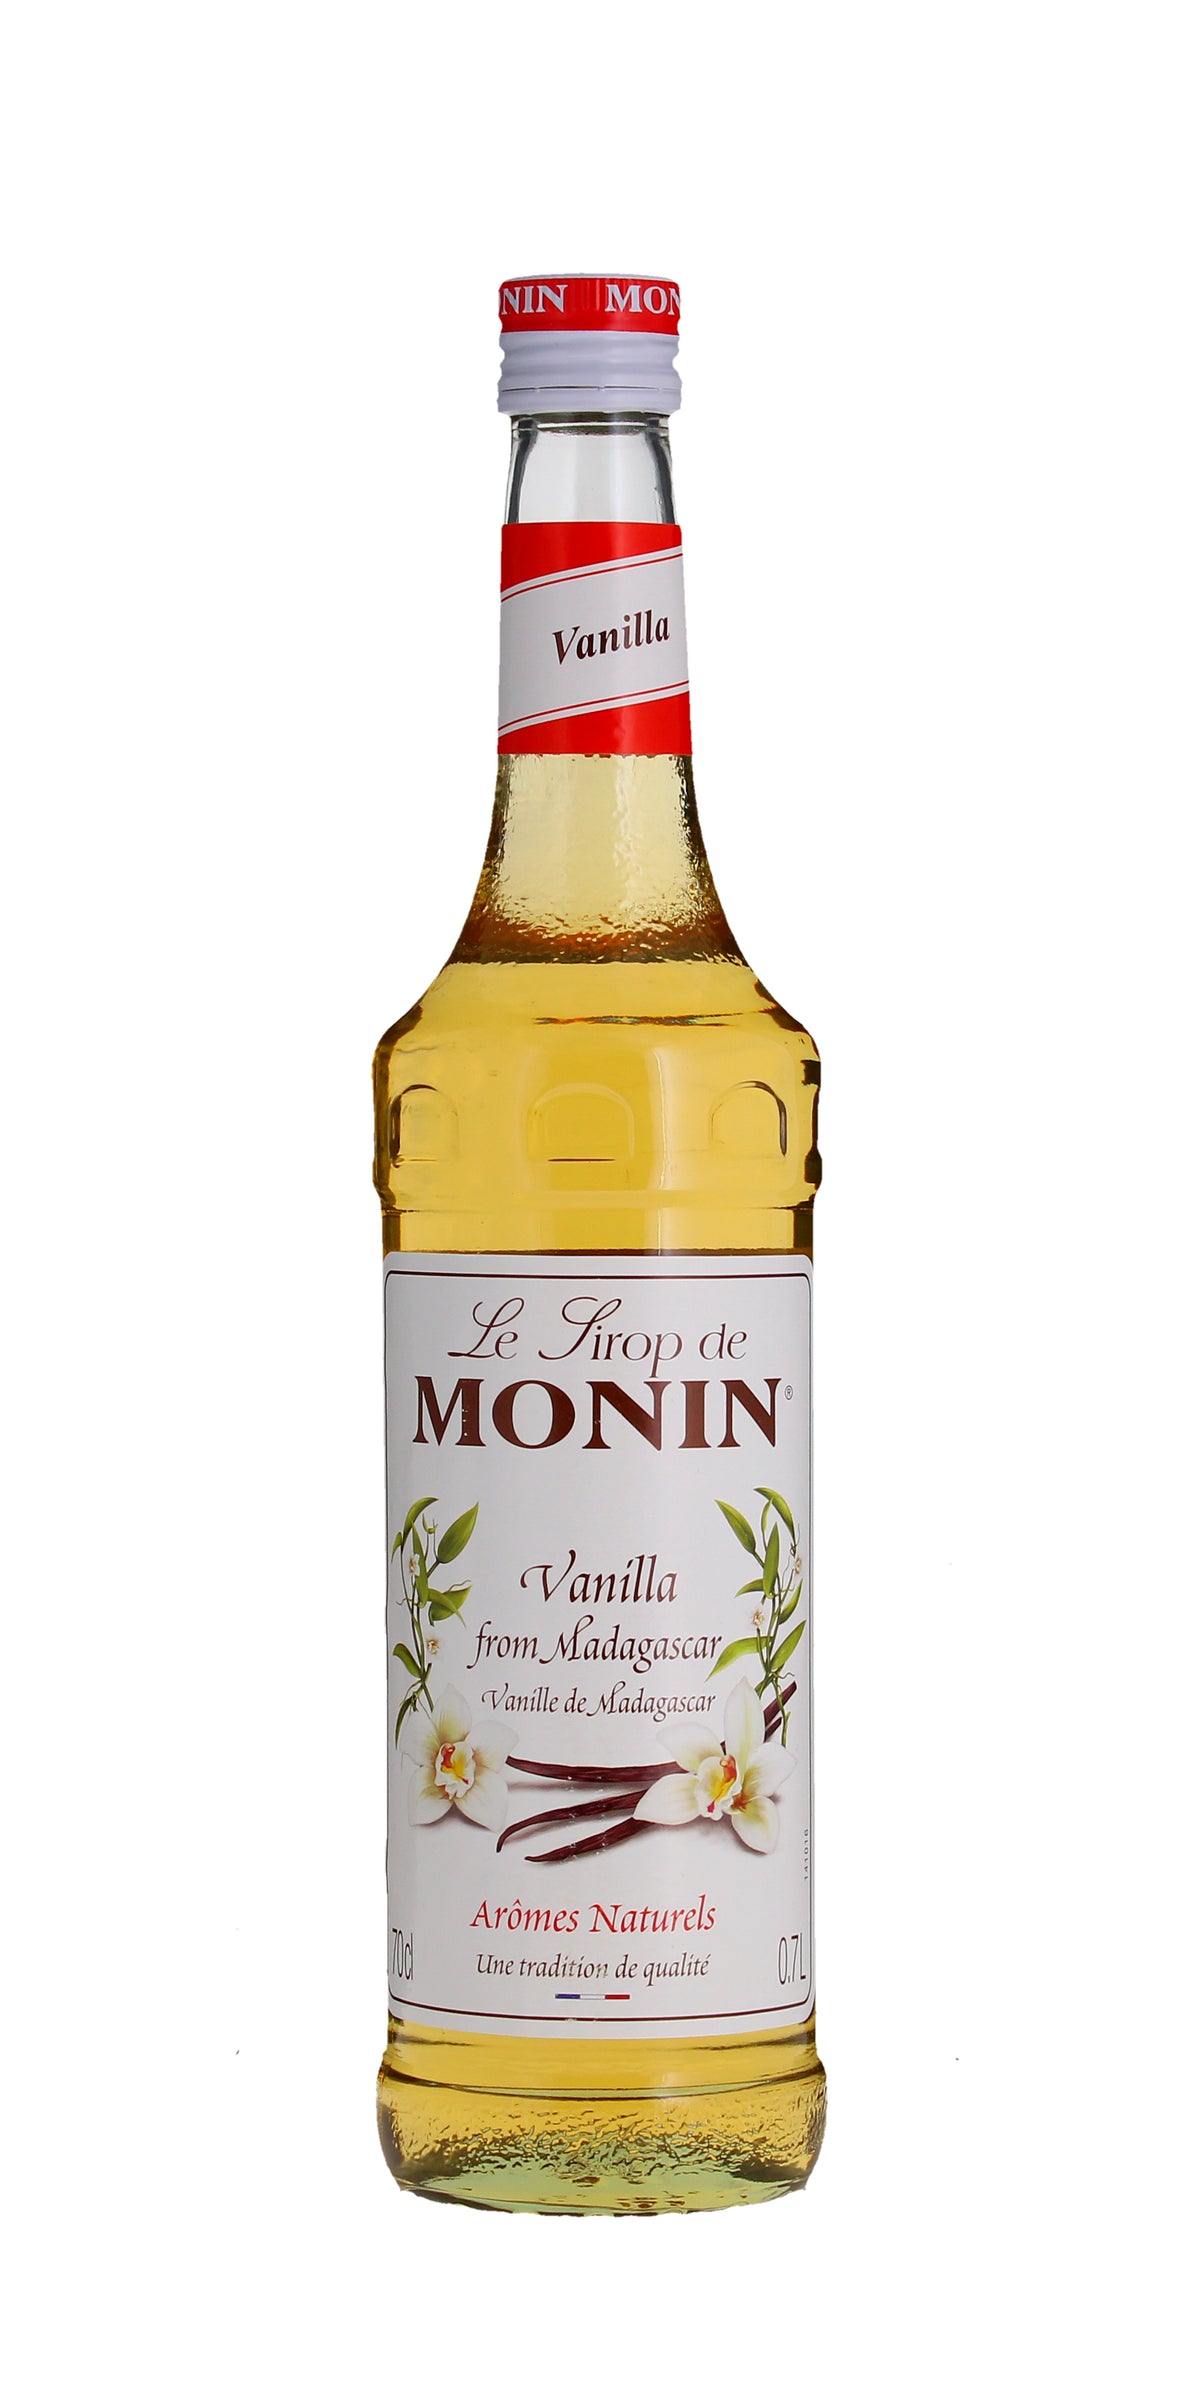 Monin Sirop Vanille -Vanilla Syrup, France 70cl